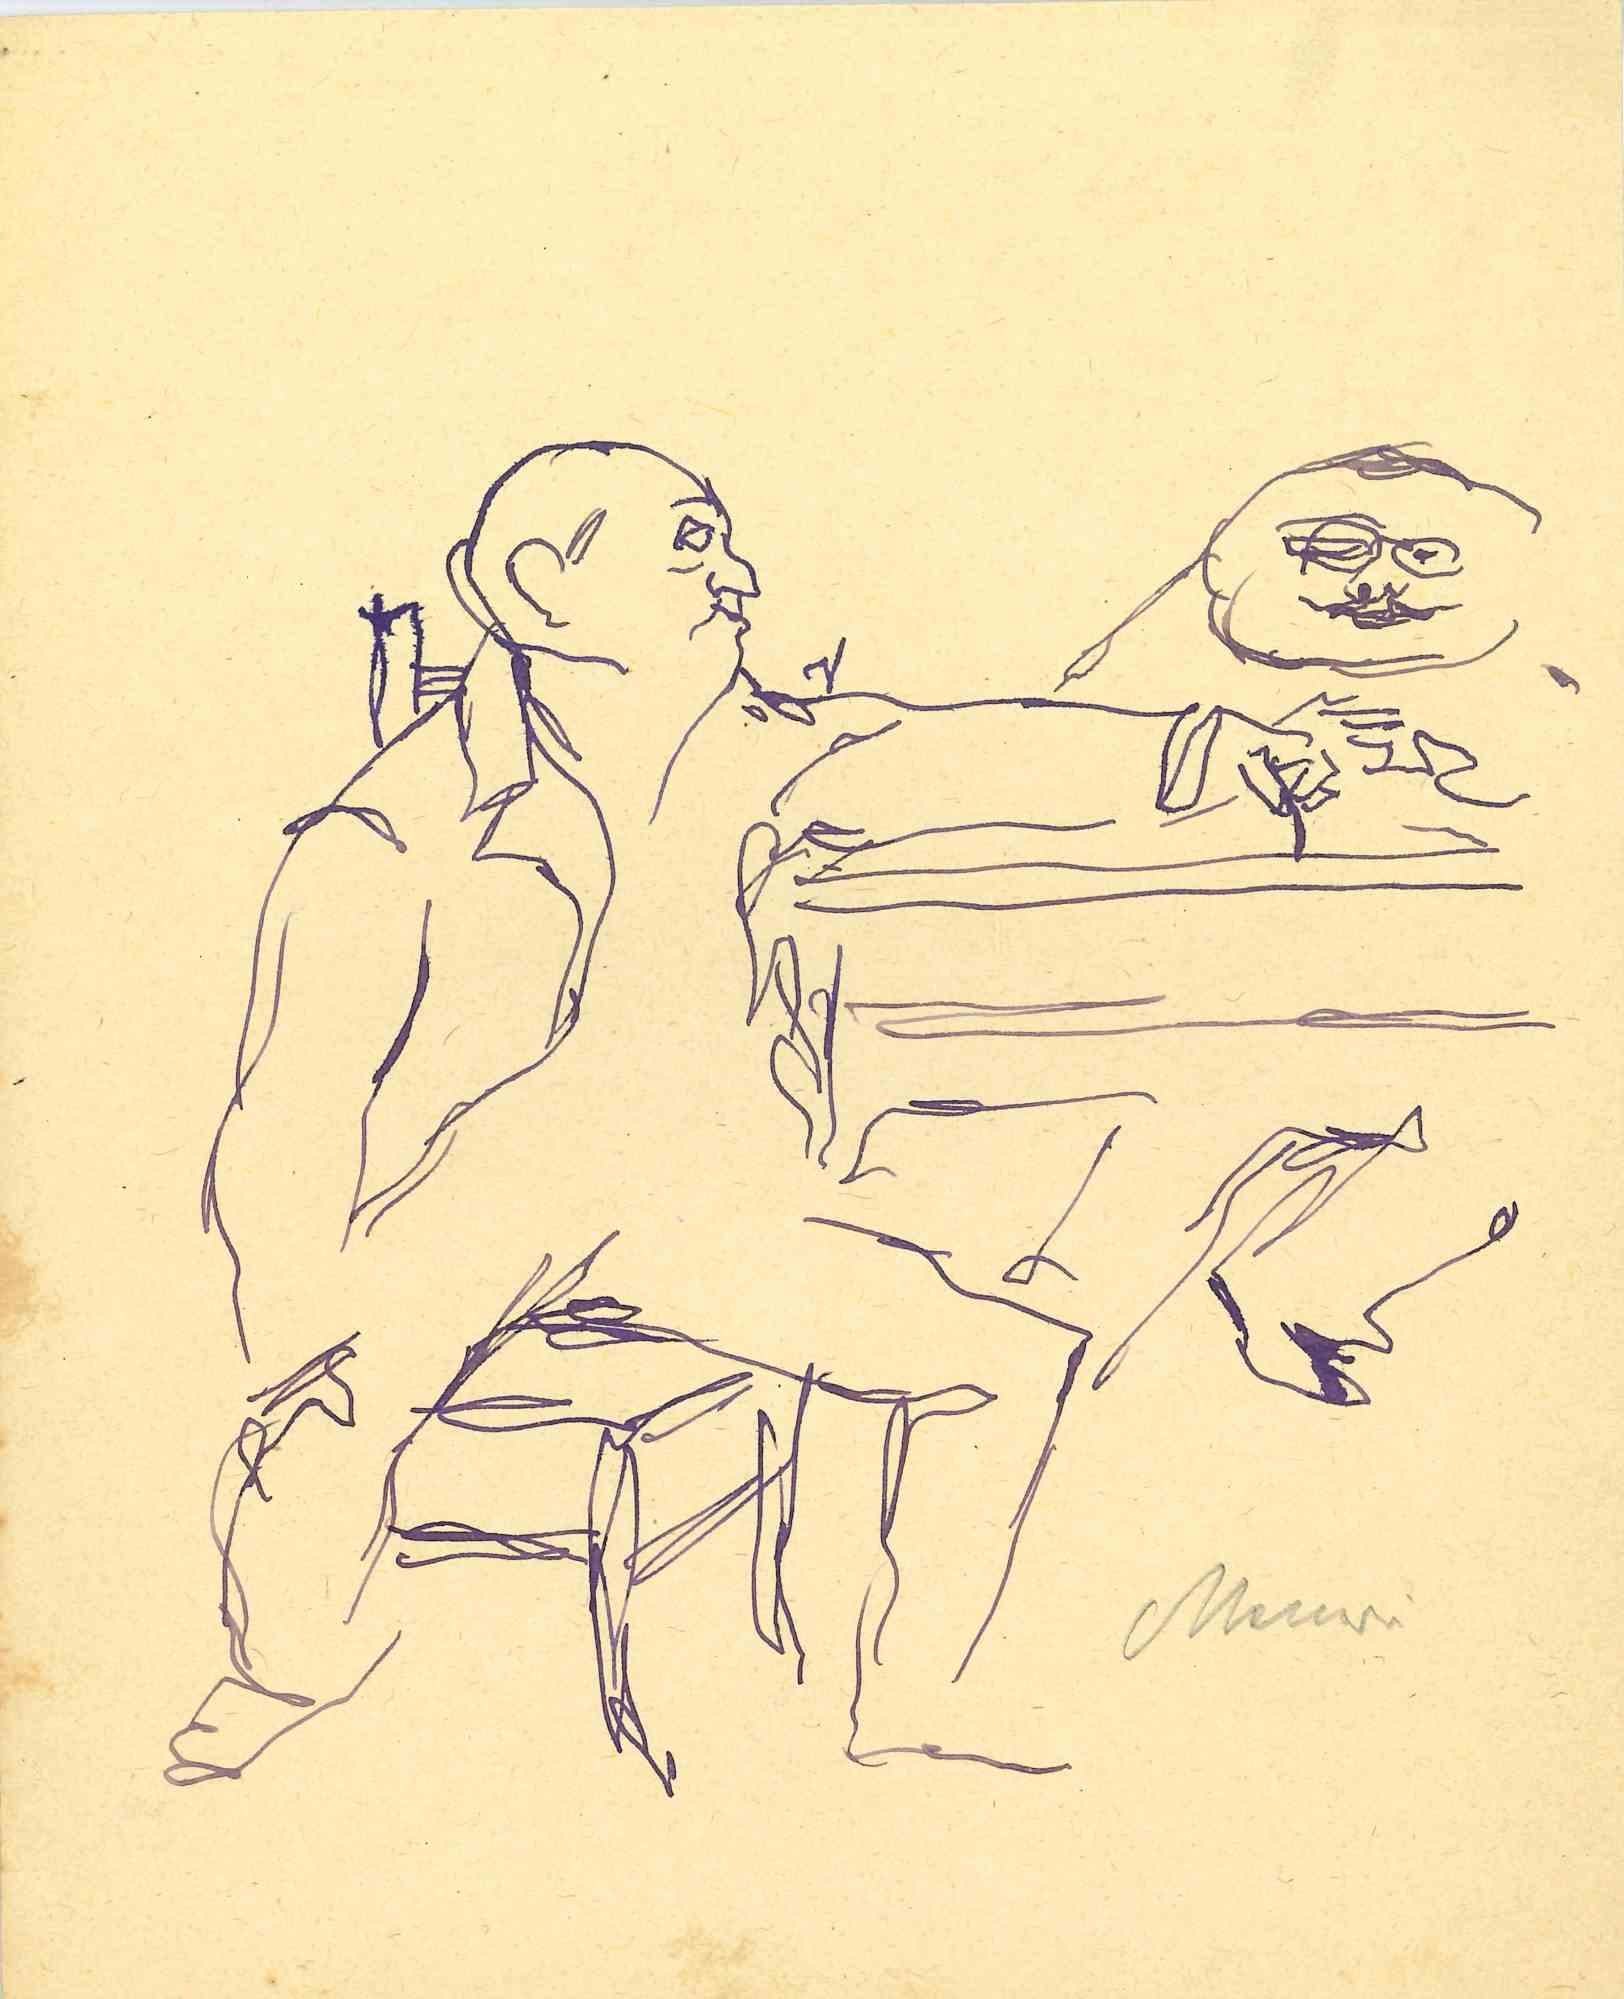 Conversation est un dessin à l'encre de Chine réalisé par Mino Maccari (1924-1989) au milieu du 20e siècle.

Signé à la main.

Bon état avec de légères rousseurs.

Mino Maccari (Sienne, 1924-Rome, 16 juin 1989) est un écrivain, peintre, graveur et